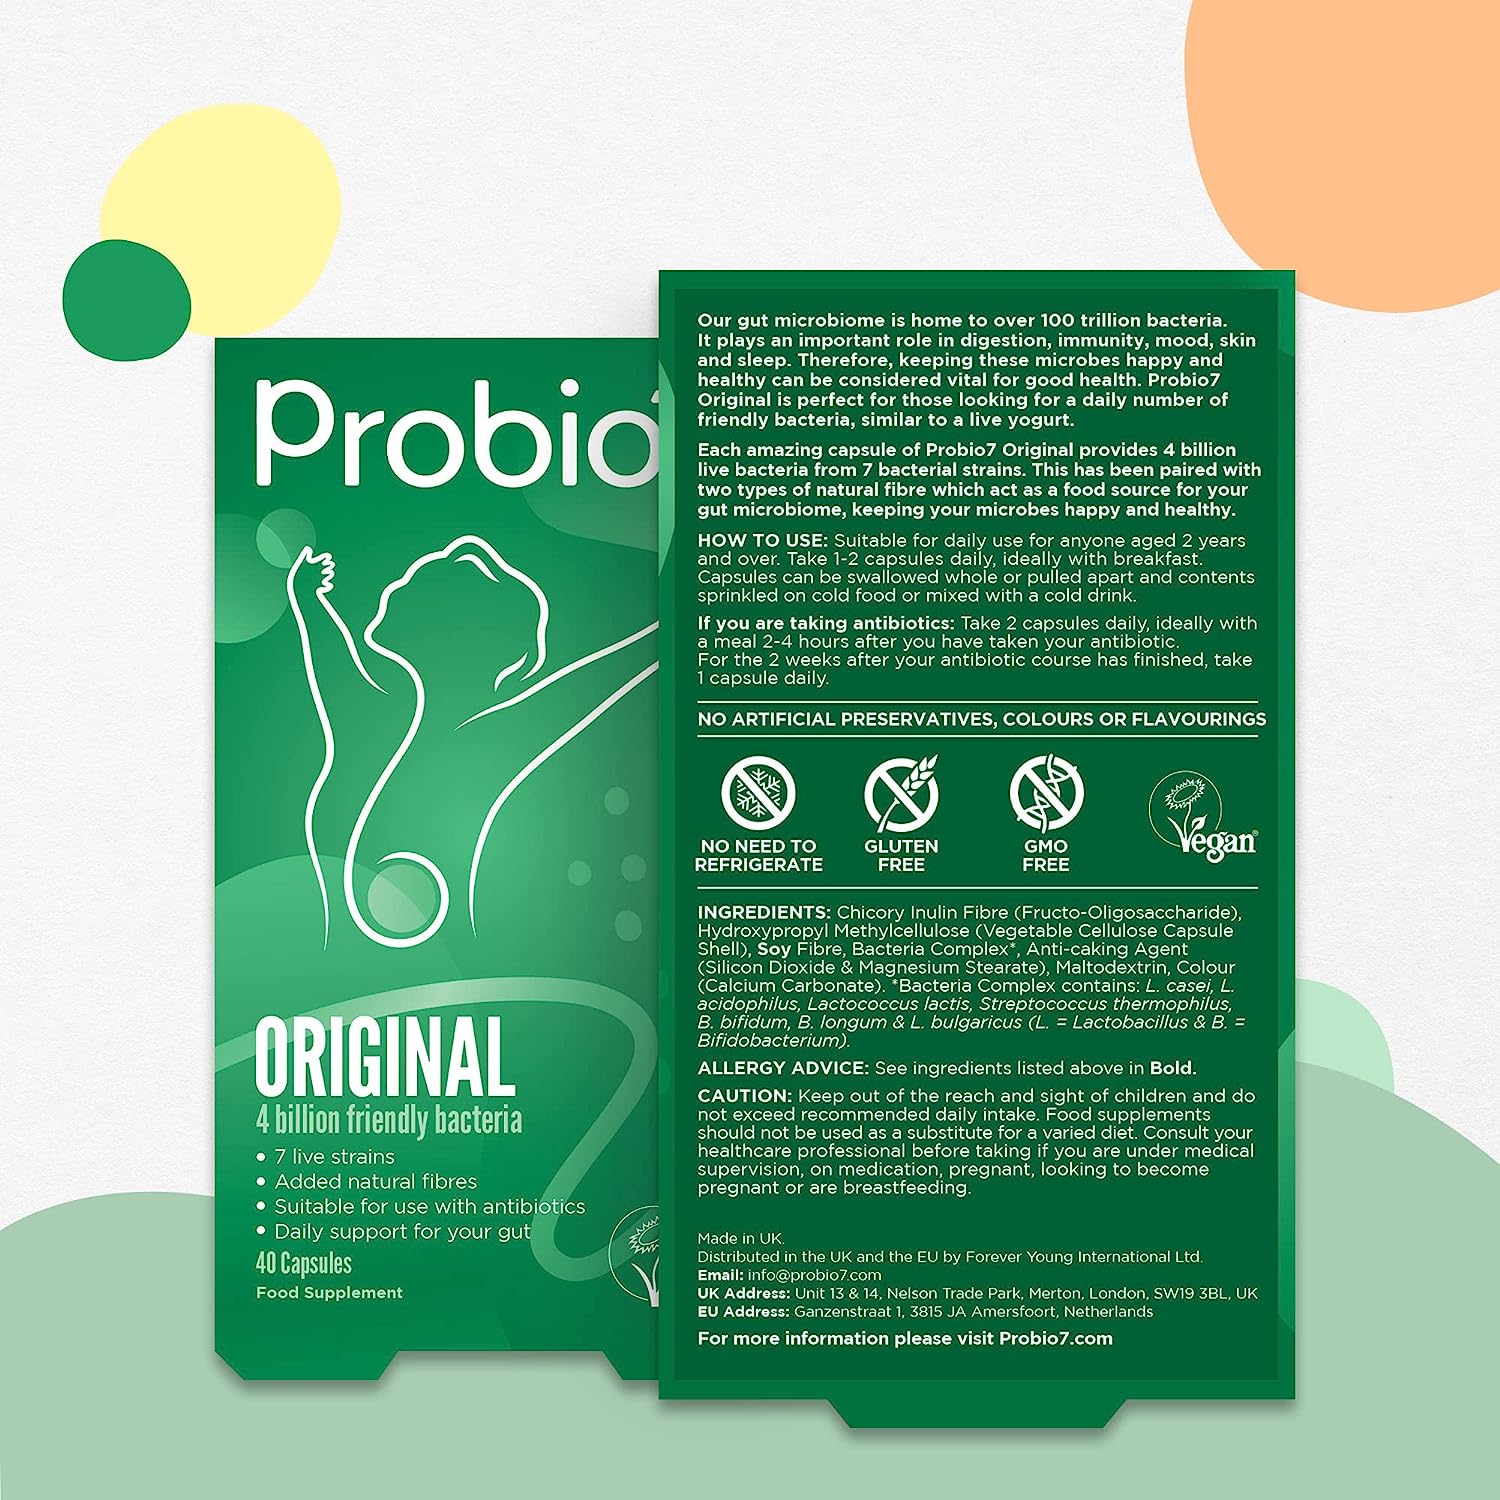 Probio7 Original Probiotics 4 Billion 7 Strains Vegan 40 Capsules